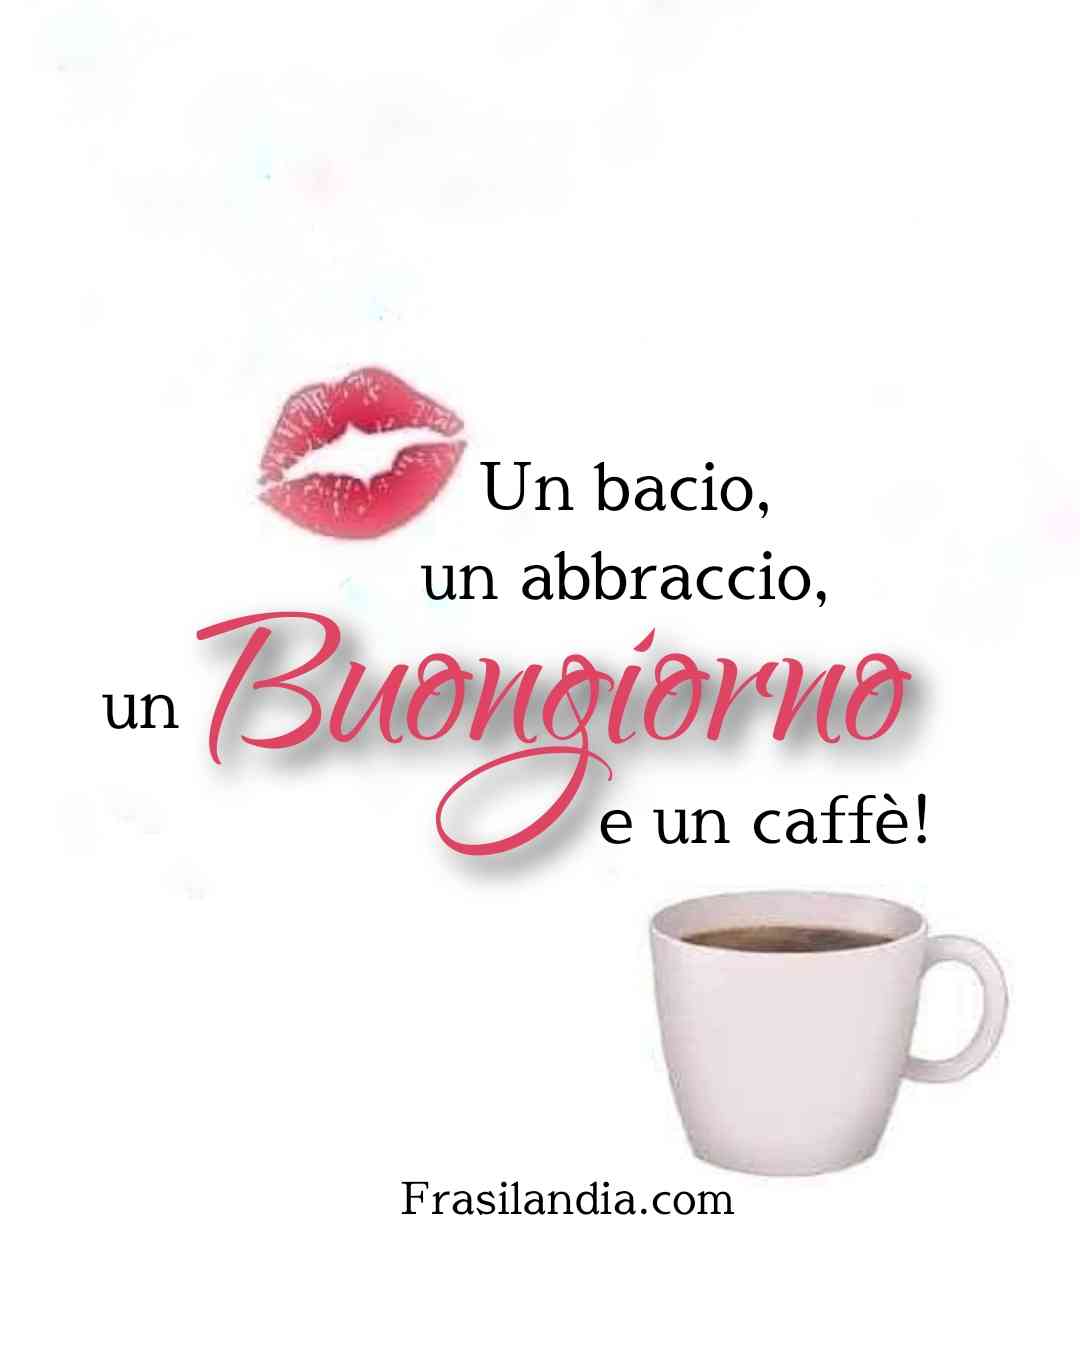 Un bacio, un abbraccio, un buongiorno e un caffè.